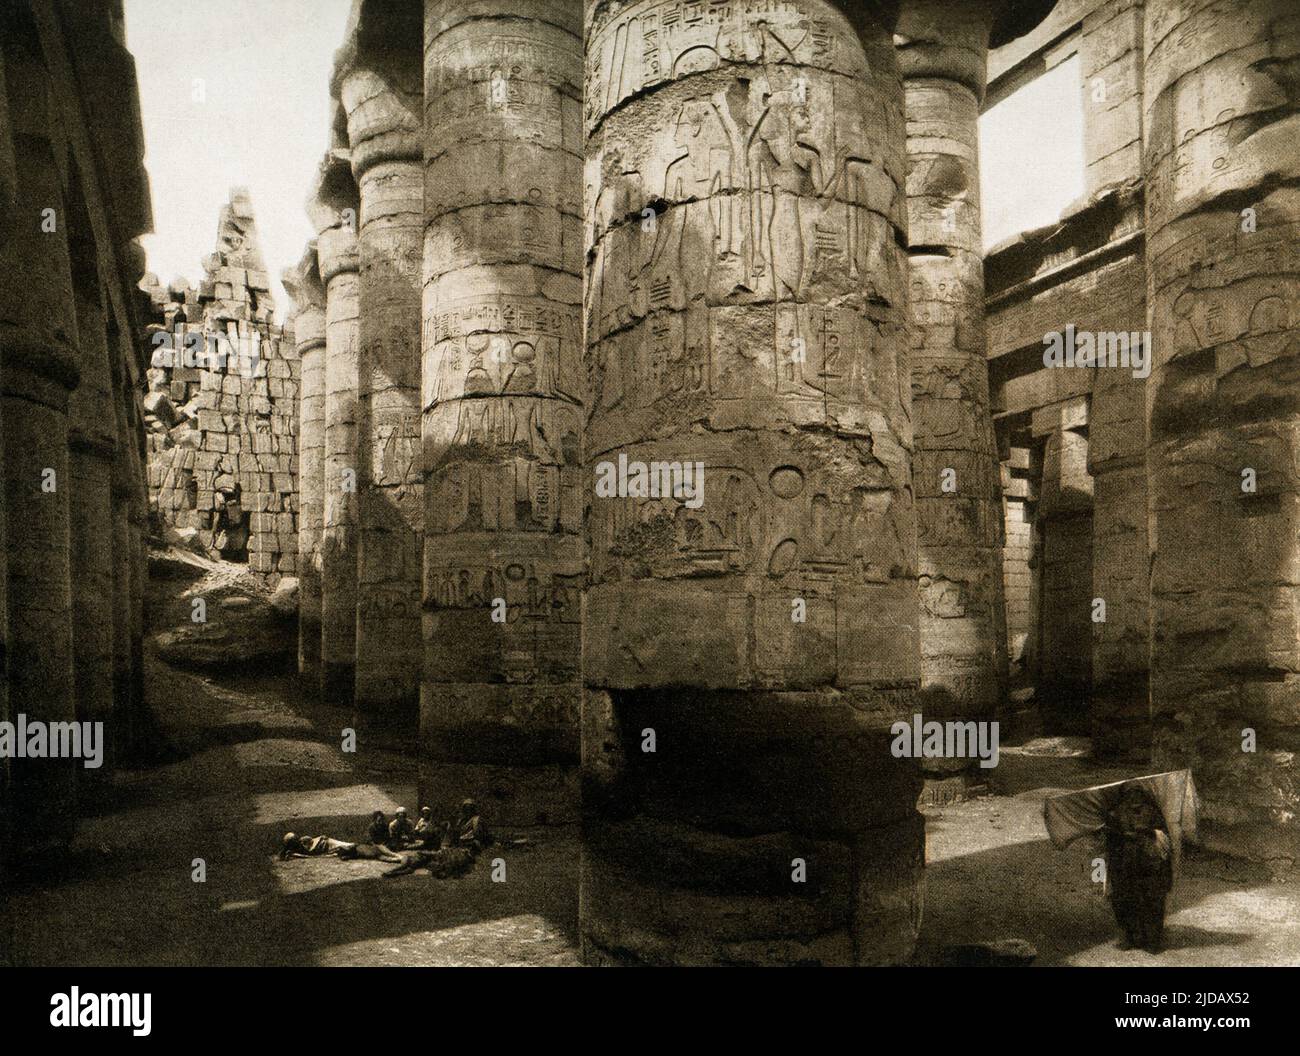 Cette image de 1910 montre les ruines de la salle des colonnes de Karnak. Le Grand Hypostyle Hall Karnak est composé de 134 colonnes géantes en grès sous forme de tiges de papyrus. Douze grandes colonnes dans sa nef centrale sont plus de 70 pieds de hauteur et sont couvertes par d'énormes capitales ouvertes de fleurs de papyrus. Le principal axe est-ouest de la salle Hypostyle est dominé par une double rangée de 12 colonnes géantes. Cette image est tirée d'une photo en Egypte par les archéologues allemands Ebers et Junghaendel. Banque D'Images